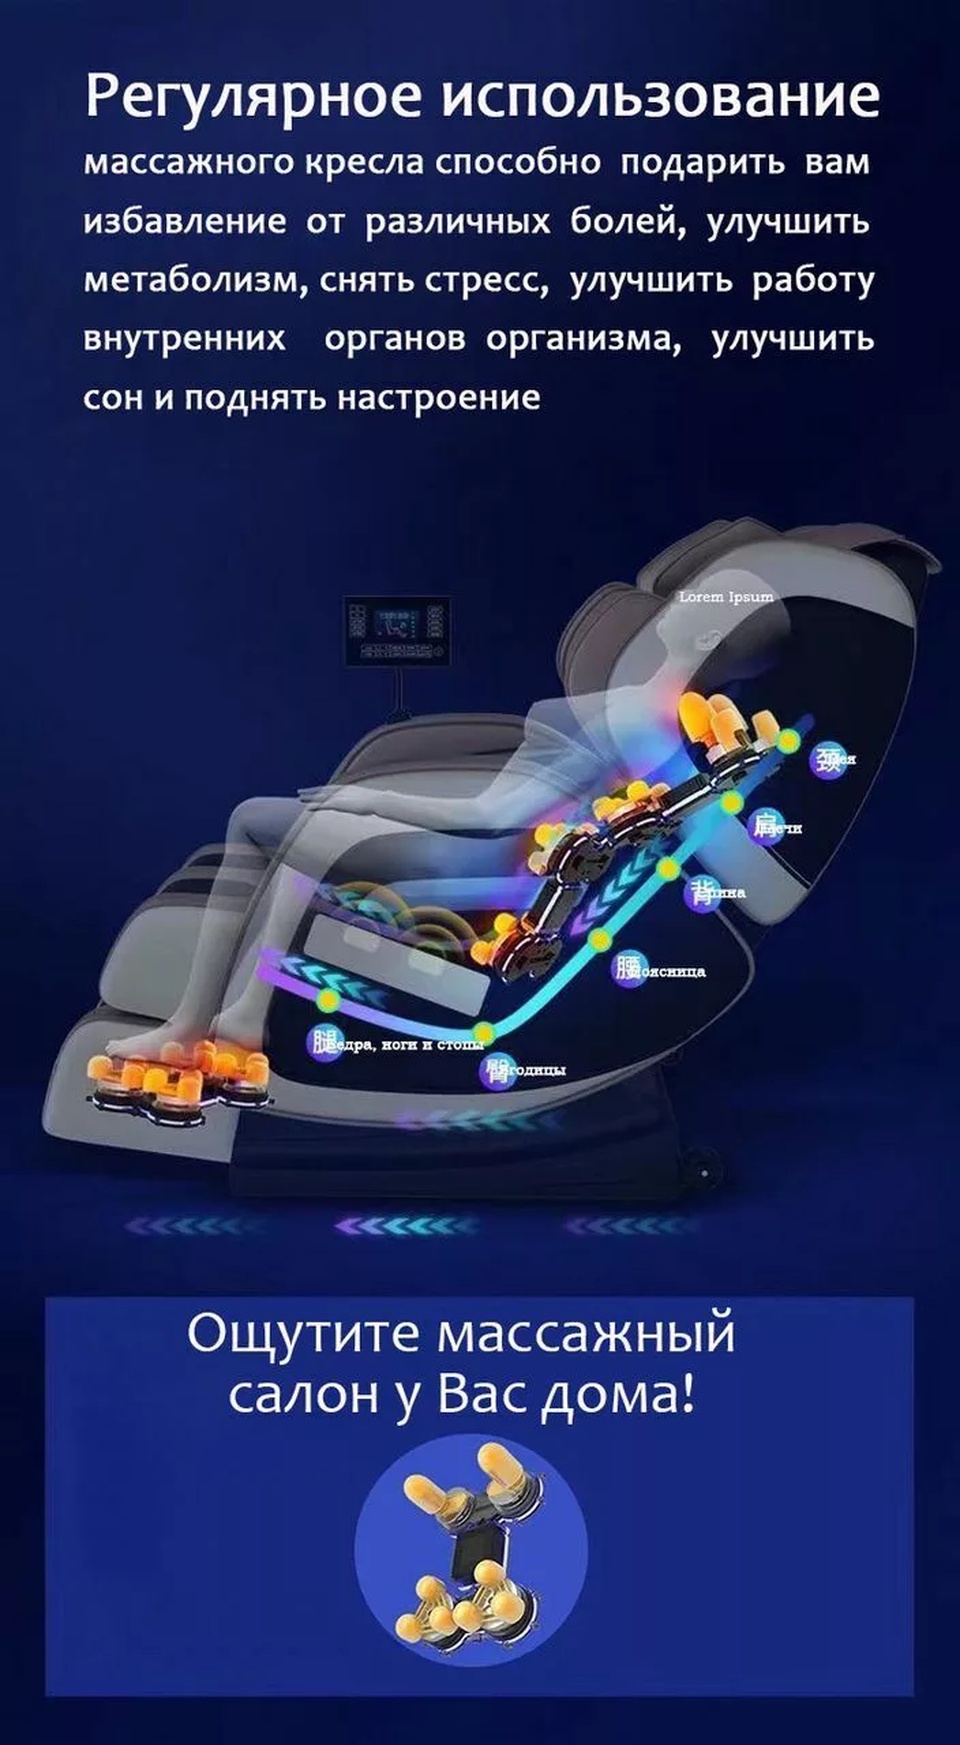 Массажное кресло A7 Серое - 75 000 ₽, заказать онлайн.